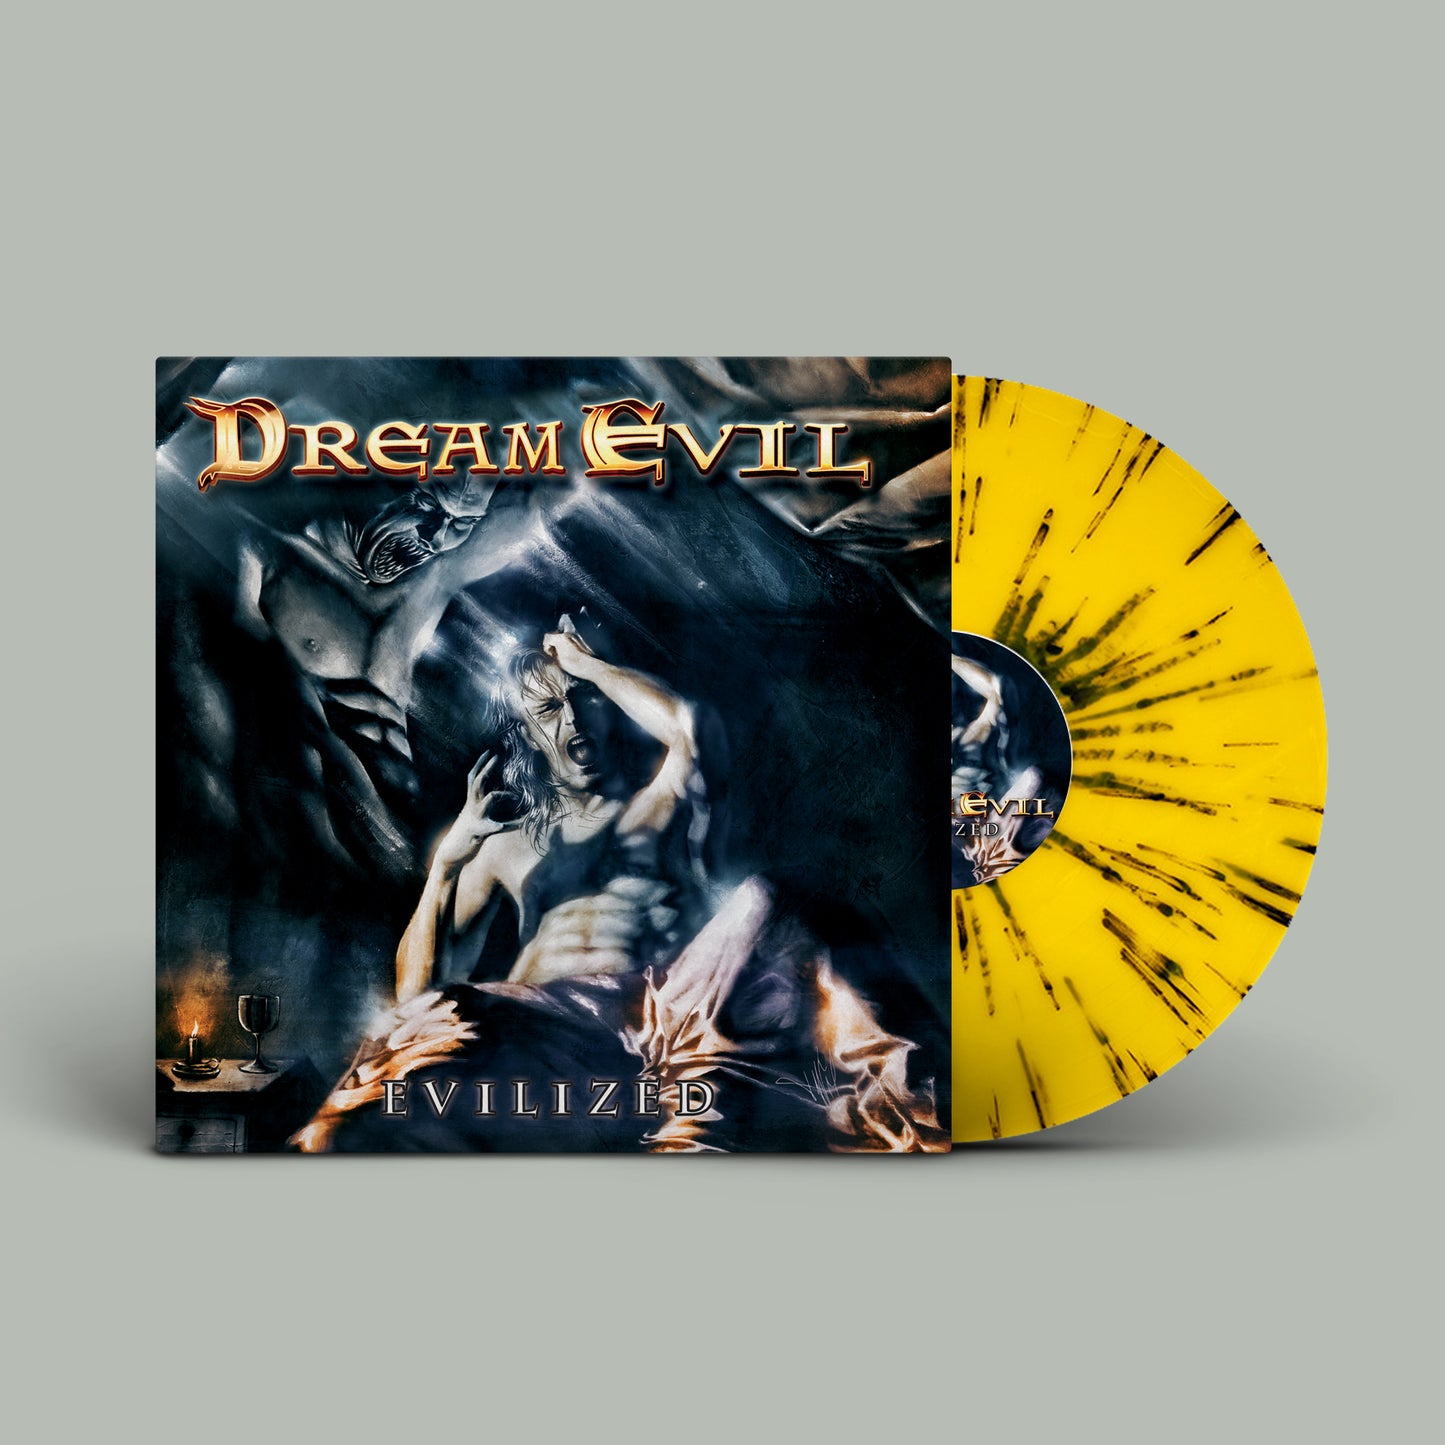 Dream Evil - Evilized freeshipping - Transcending Records